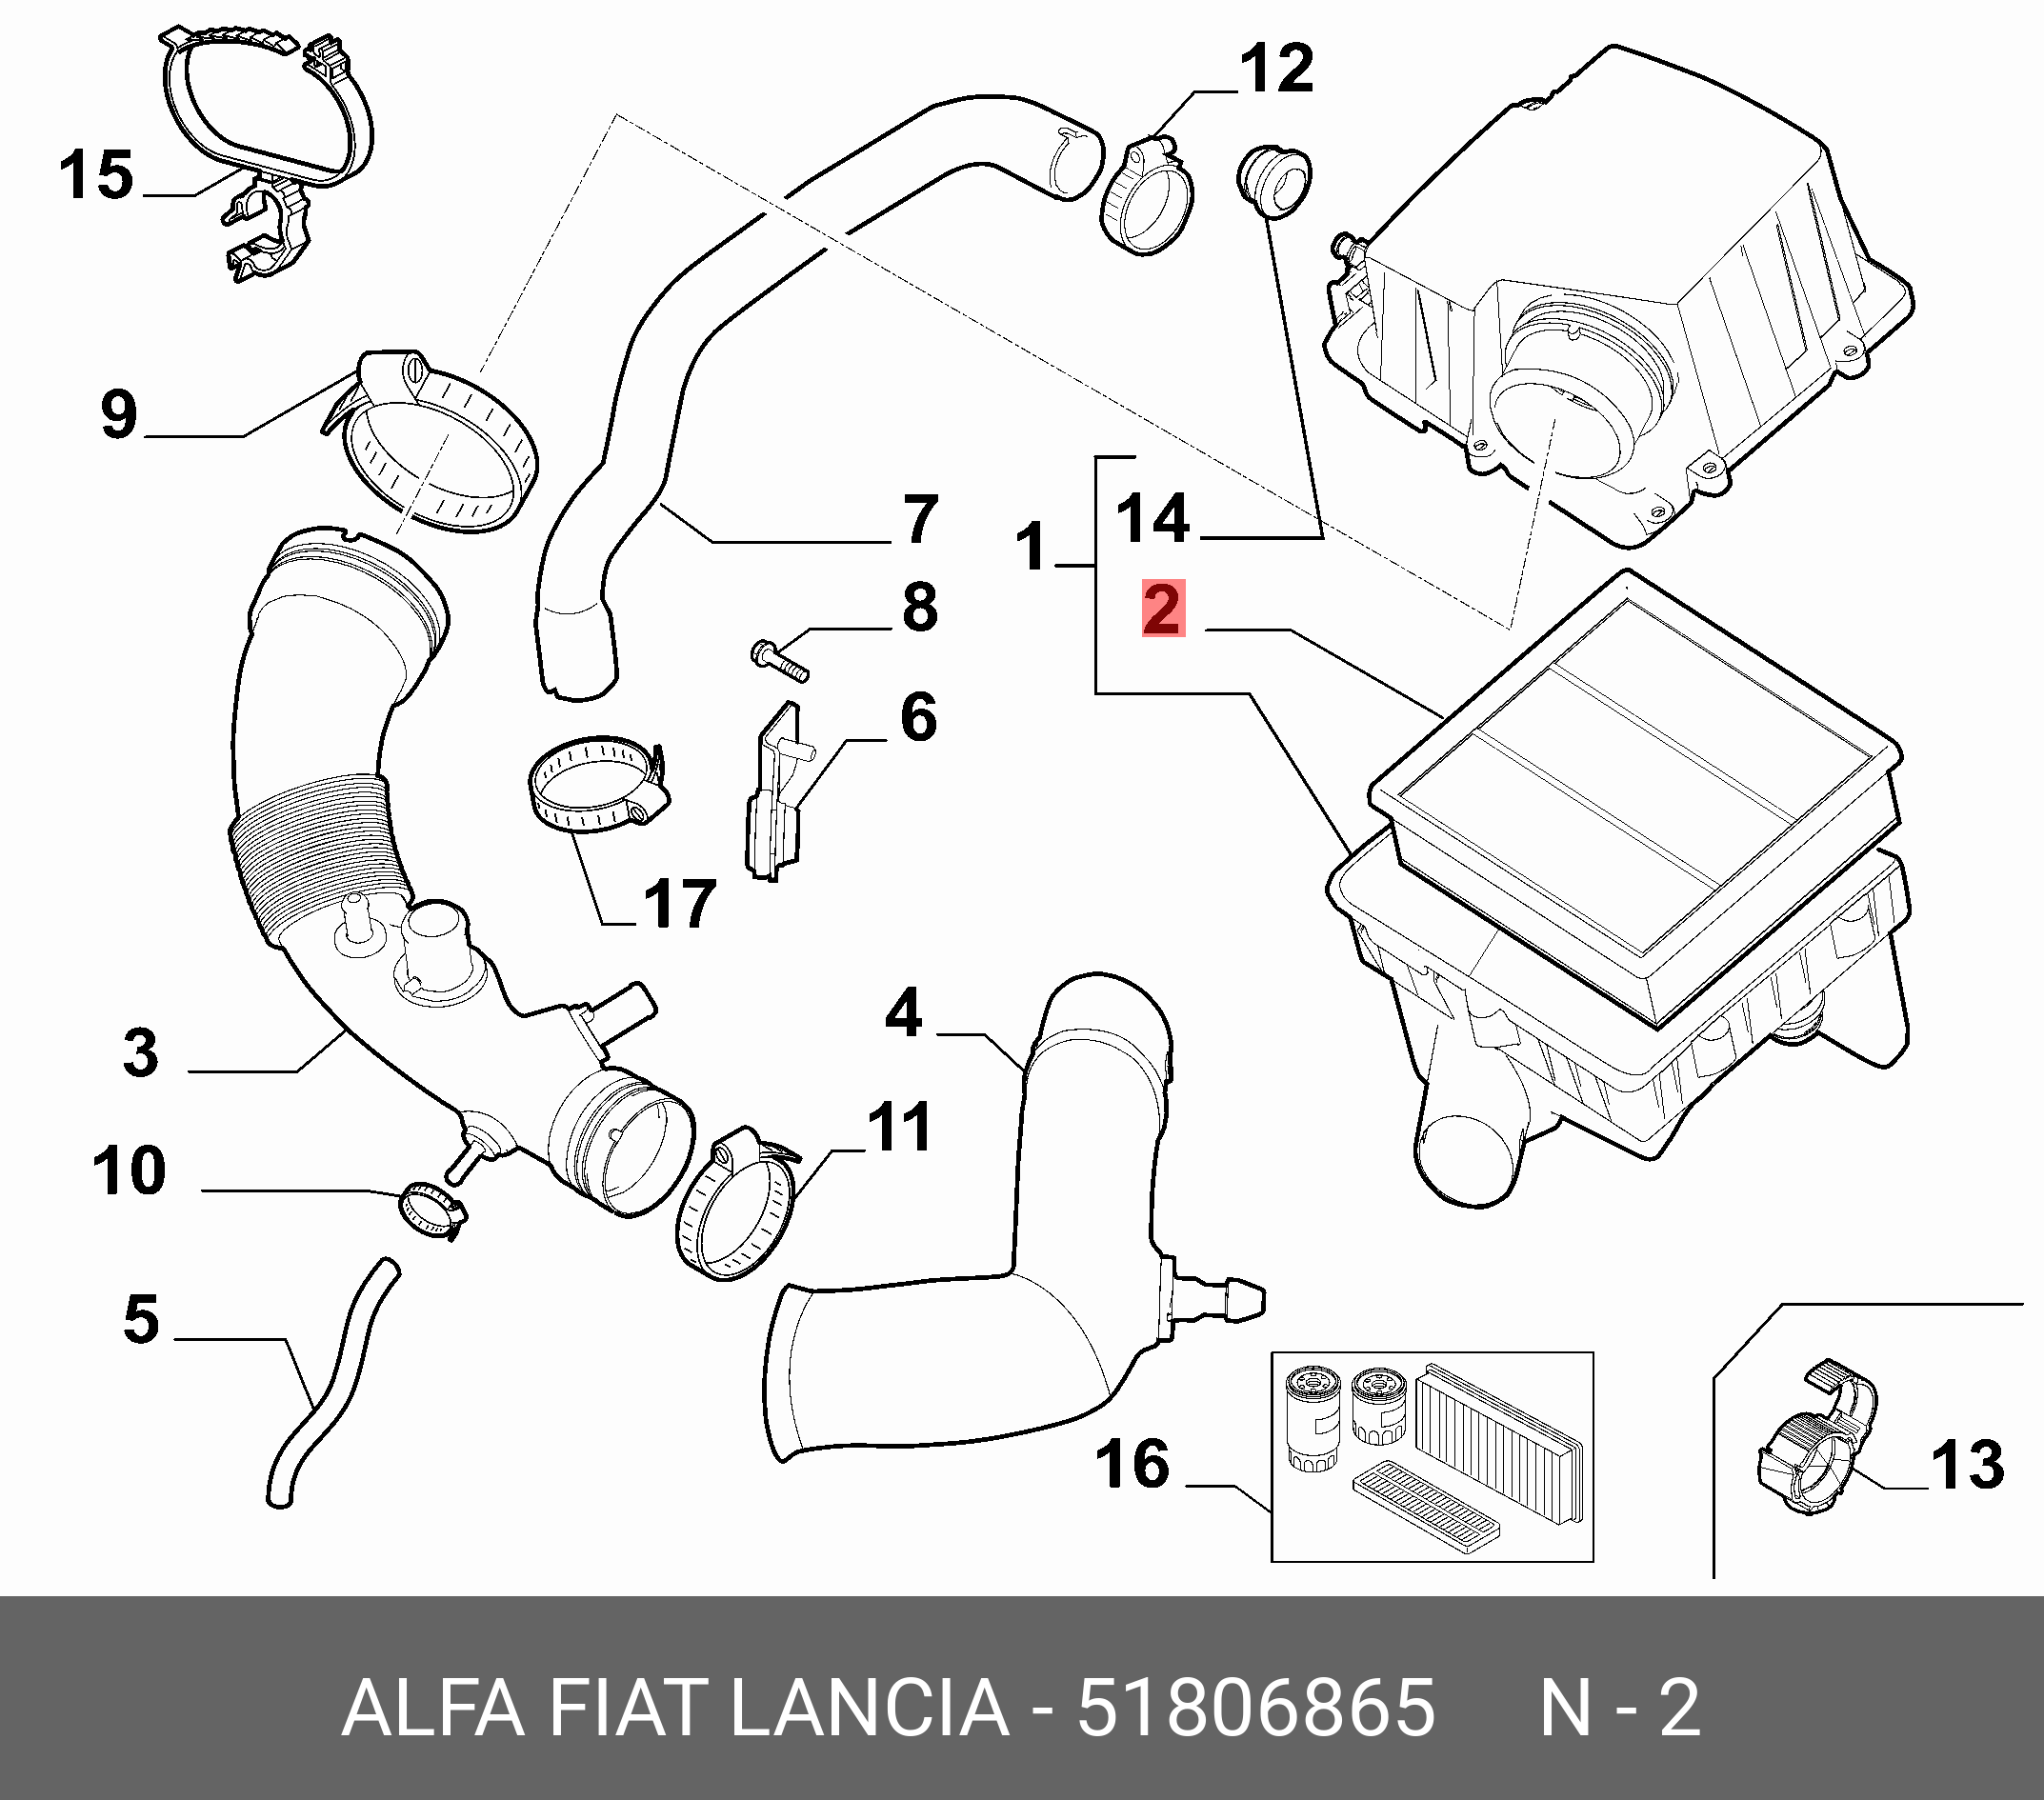 Фильтр воздушный - Fiat/Alfa/Lancia 5 180 6865